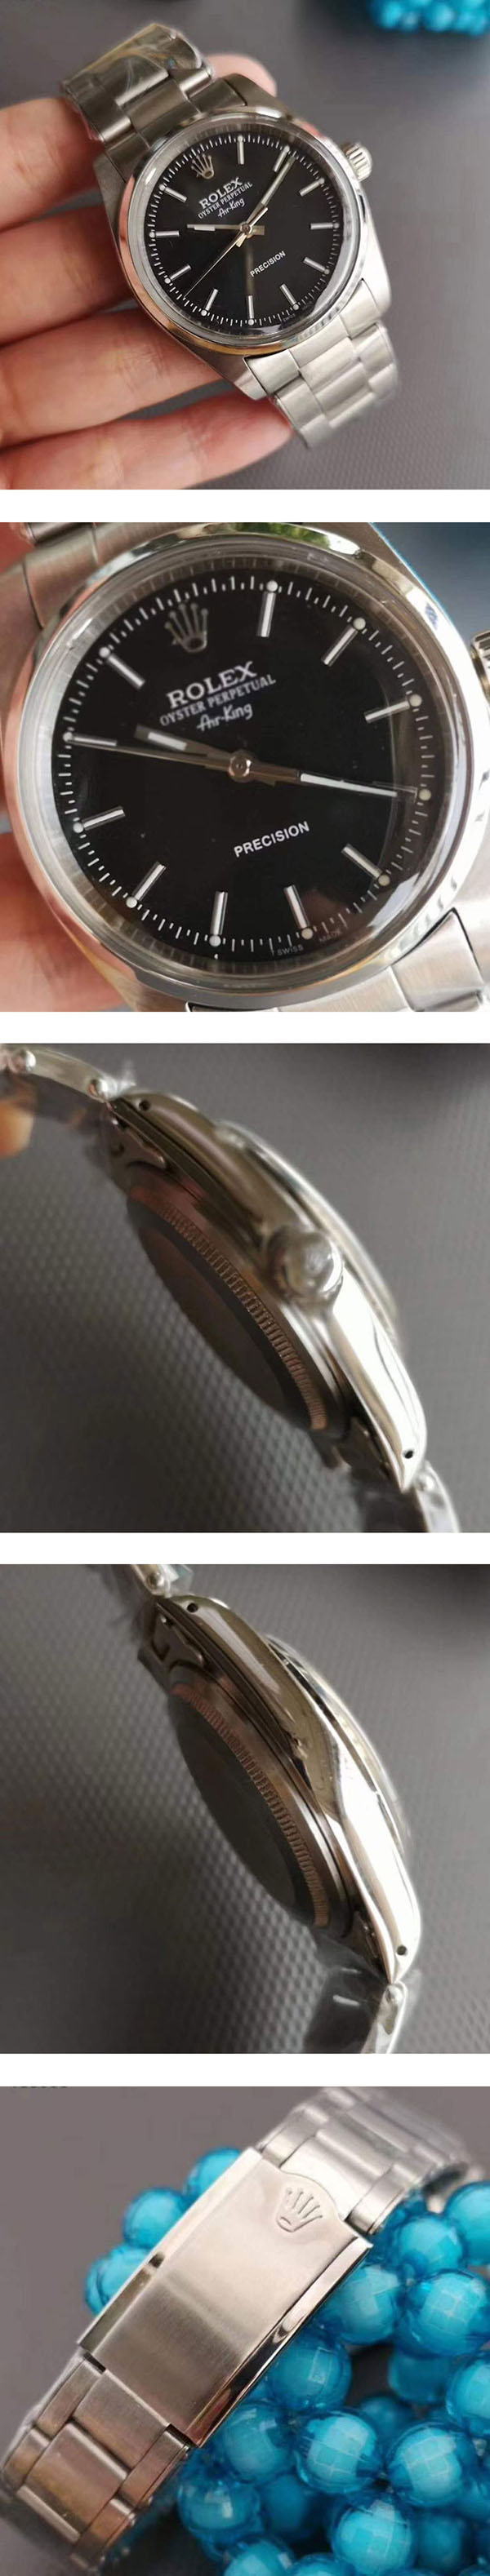 【高級腕時計】ロレックス エアキングコピー14000M、Asian eta 28800振動 (自動巻き)